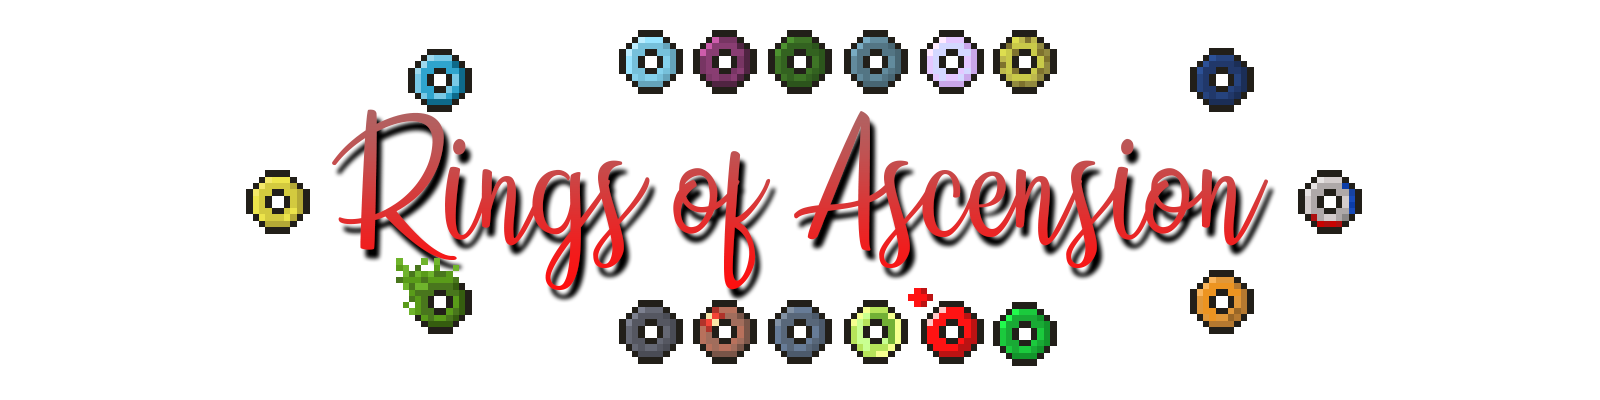 Rings of Ascension screenshot 1